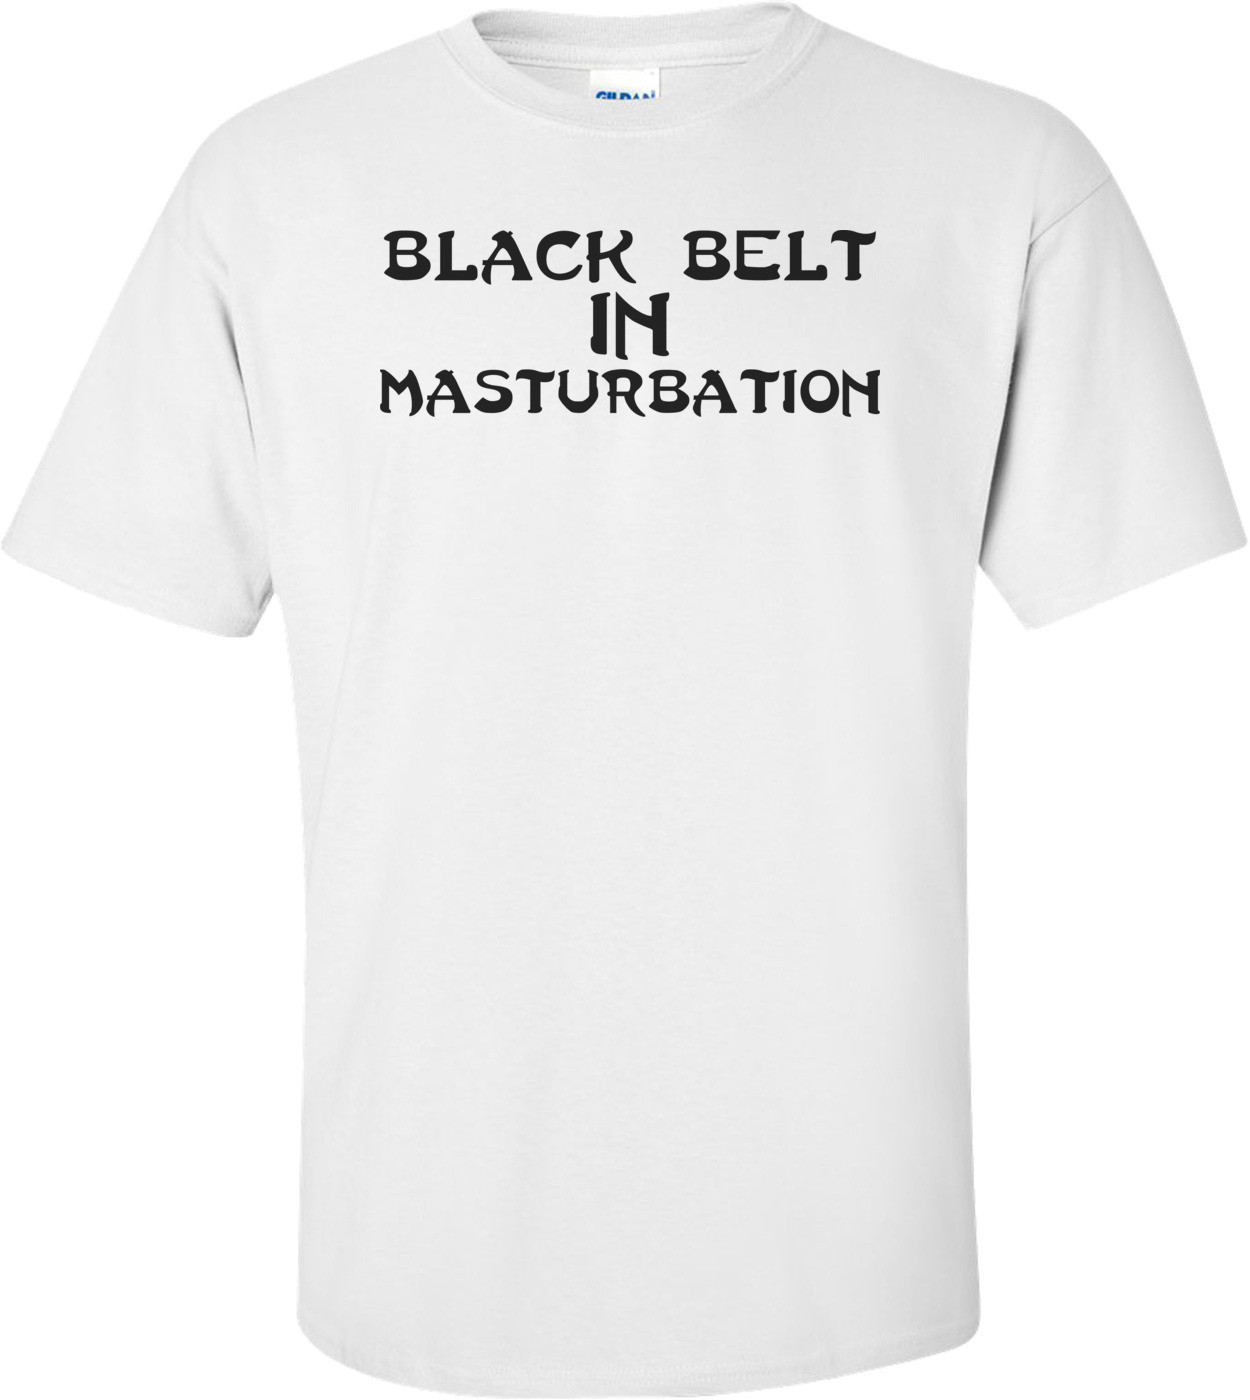 Black Belt In Masturbation T-shirt